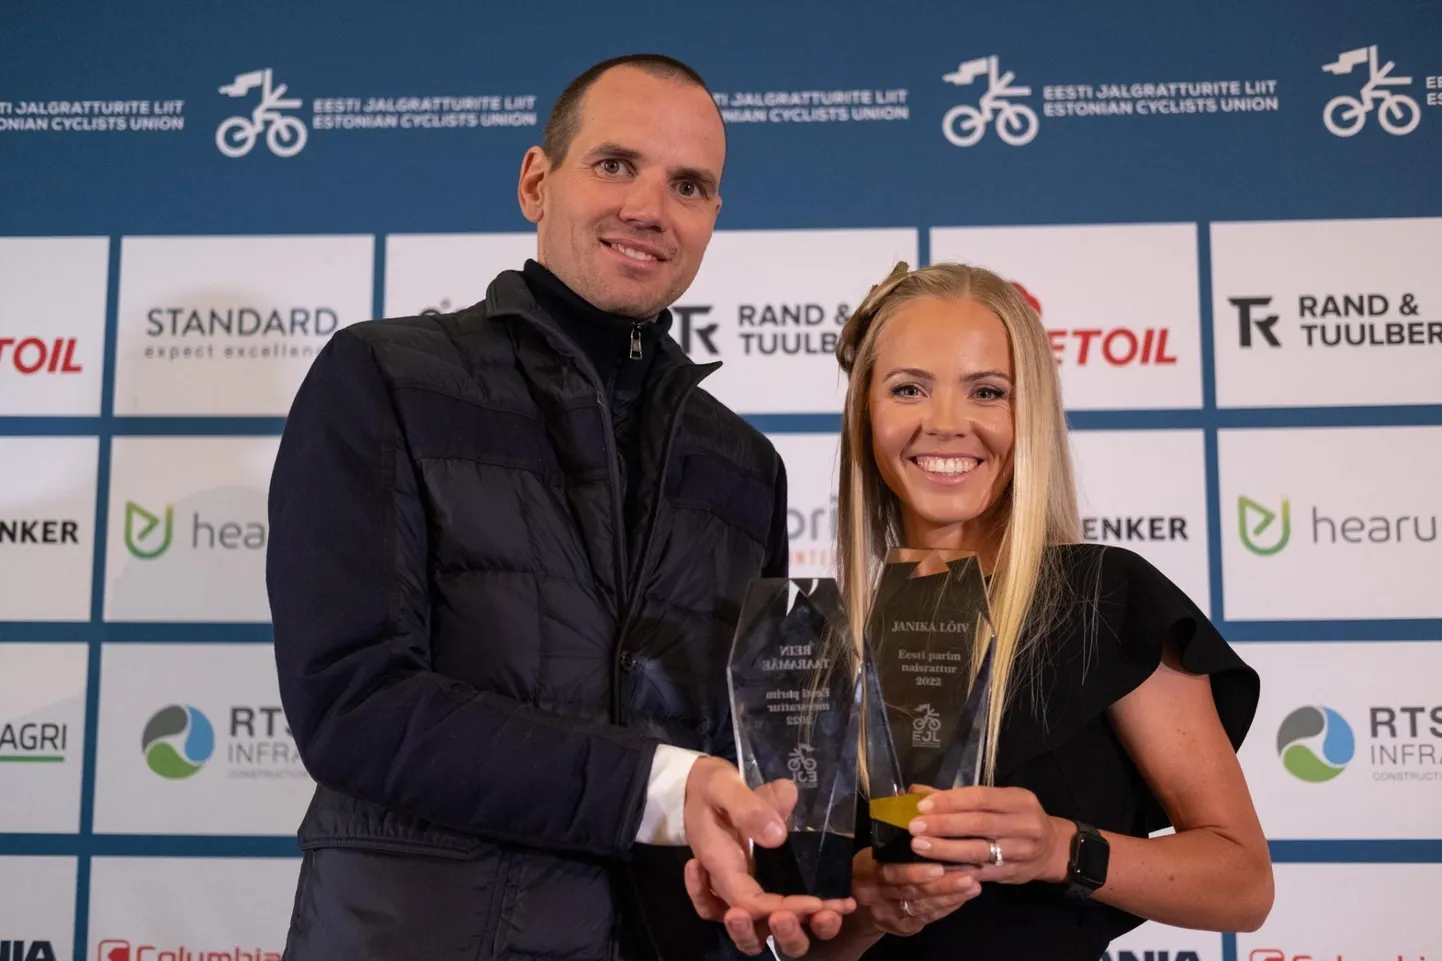 Selle aasta parimateks ratturiteks valiti Rein Taaramäe ja Janika Lõiv.